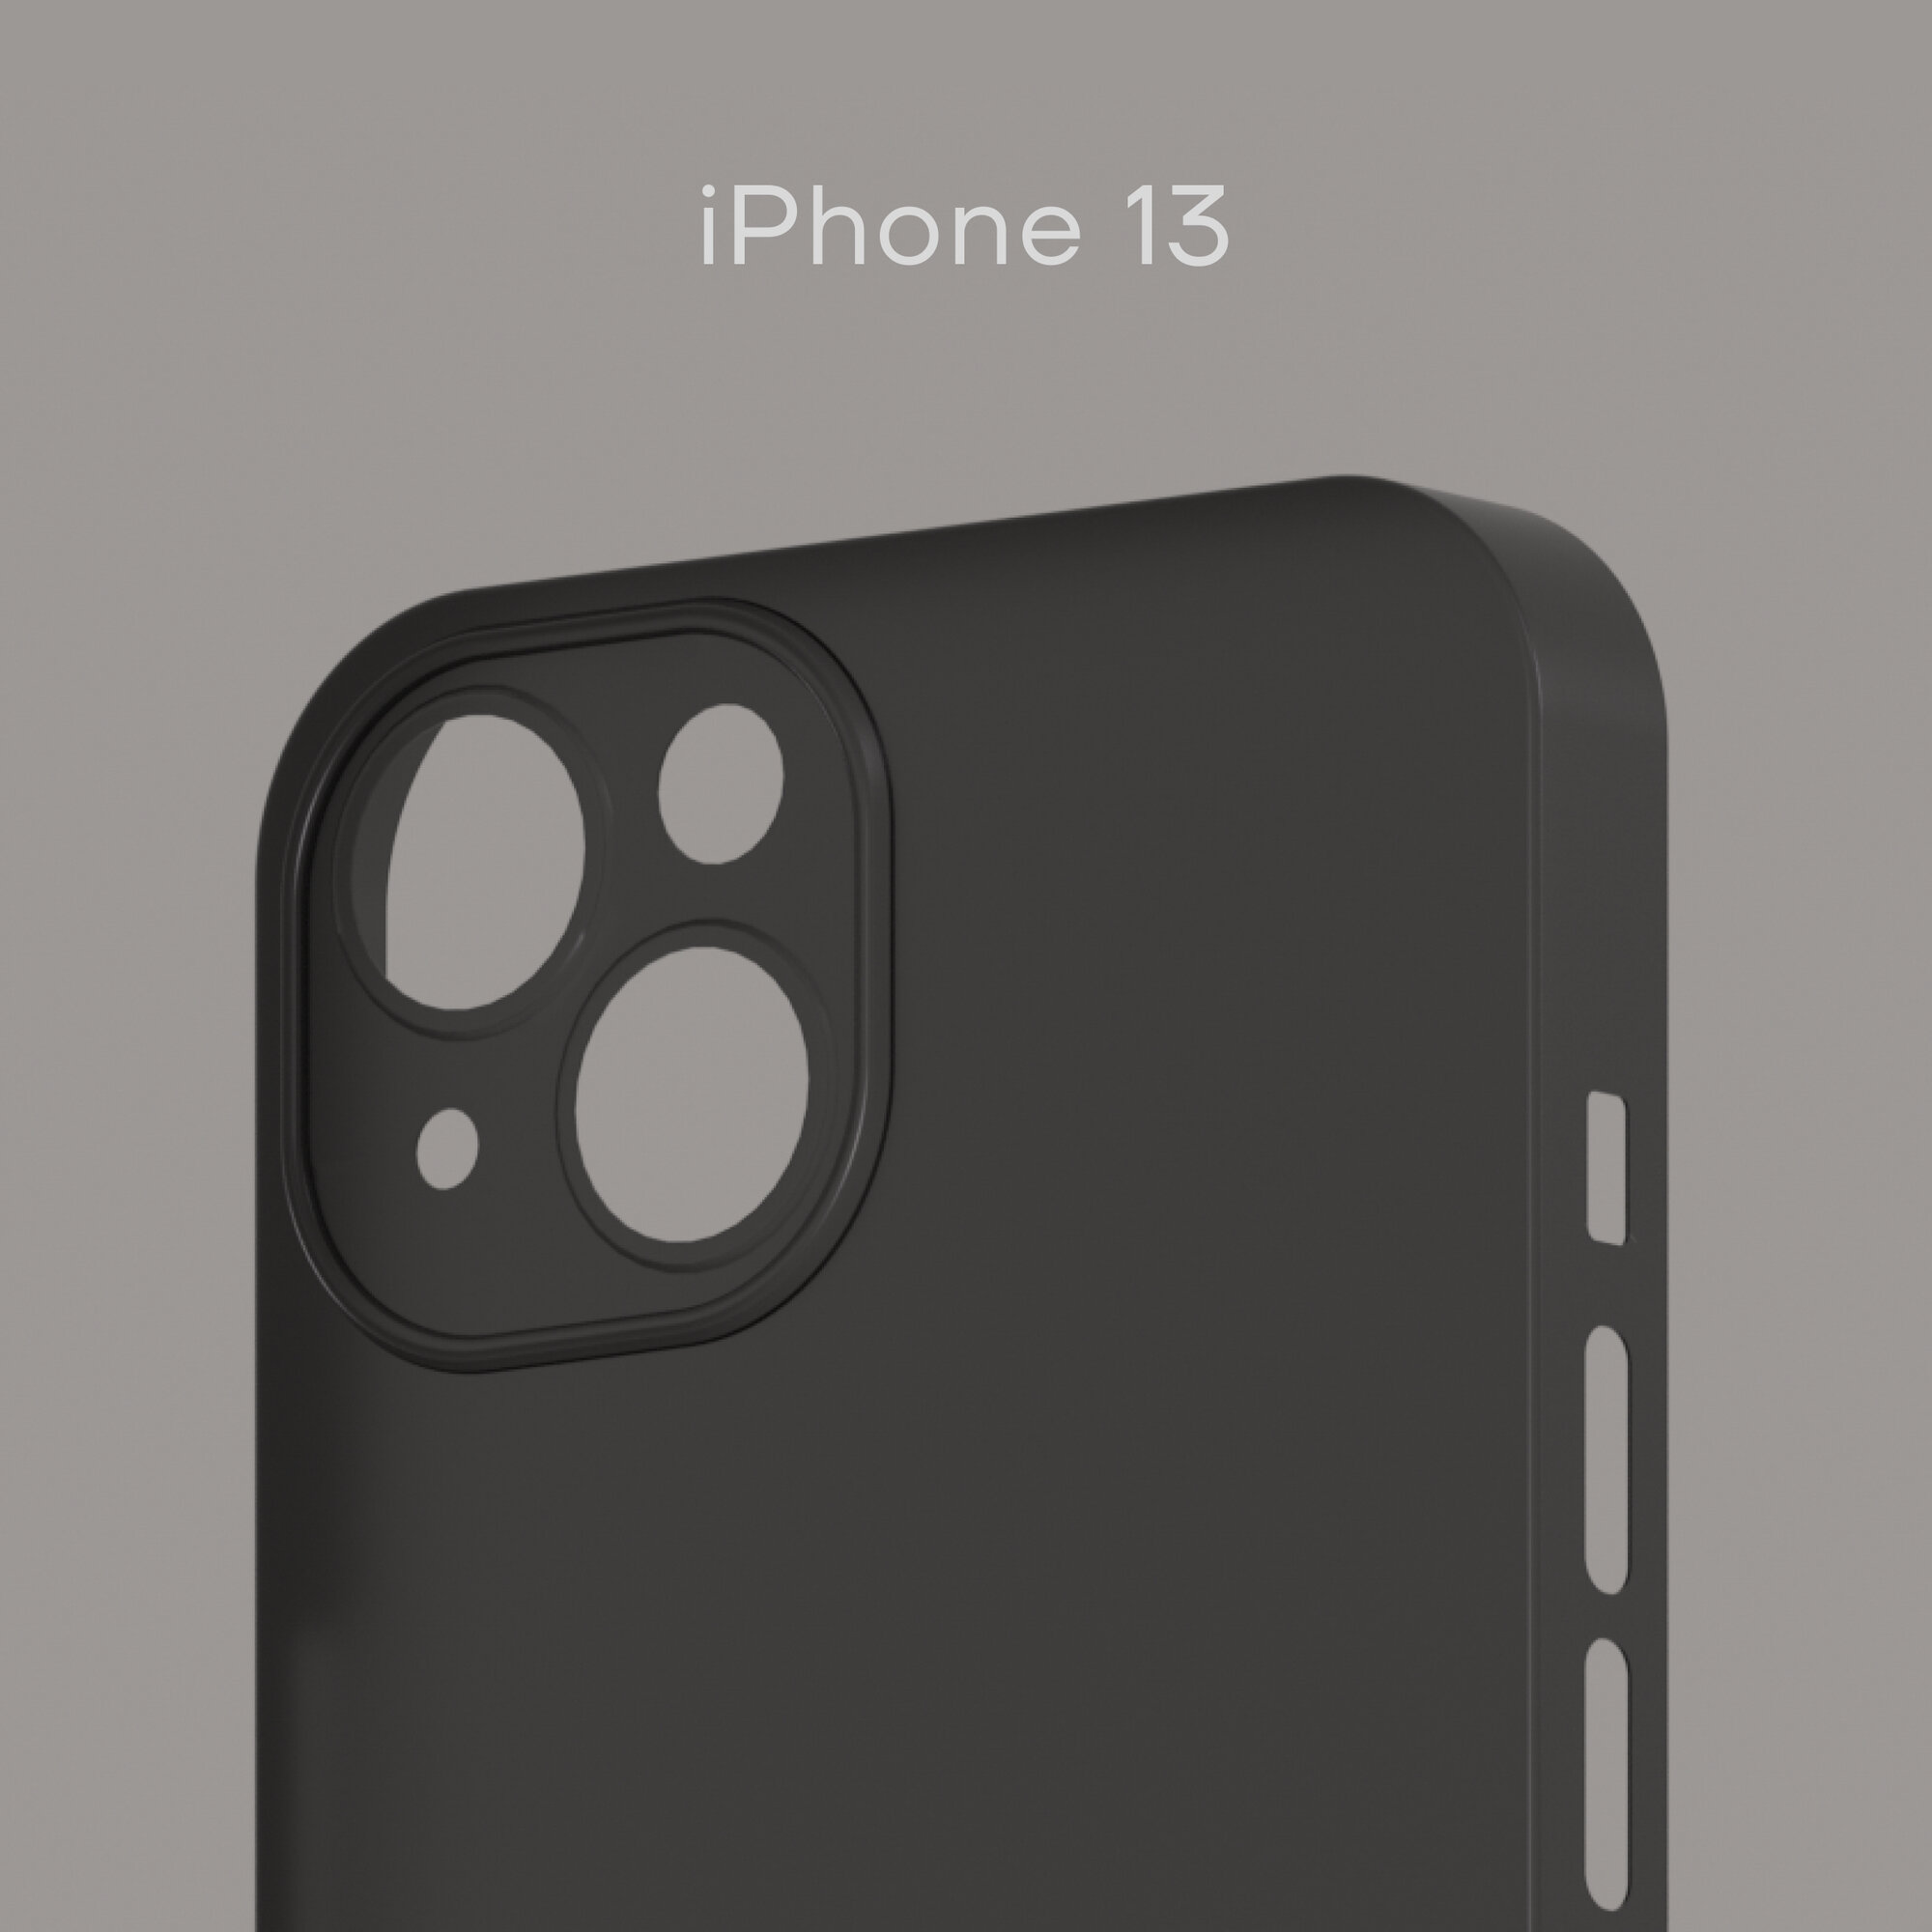 Ультратонкий чехол Уголок Air Case для iPhone 13 толщиной 0,3 мм, черный, матовый, пластиковый